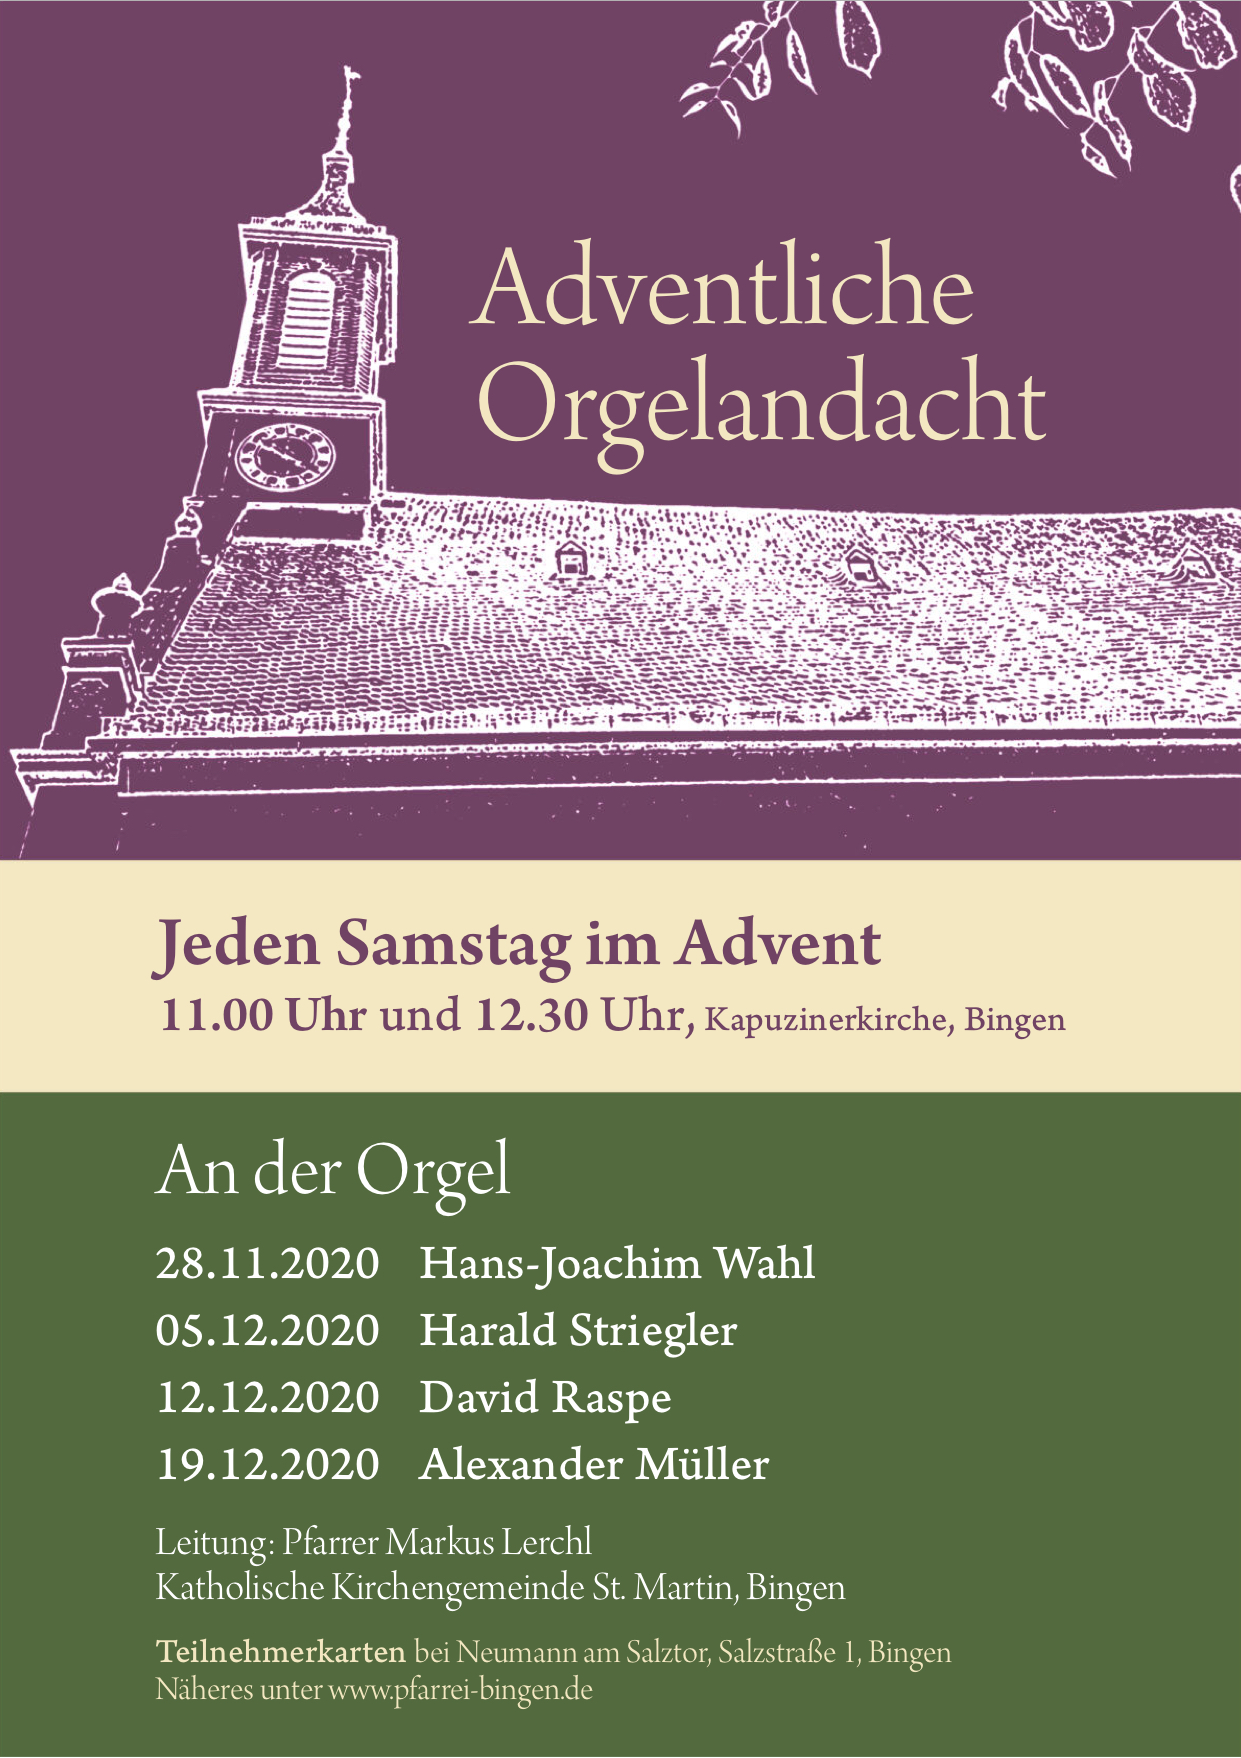 Adventliche Orgelandacht (c) Katharina Specht